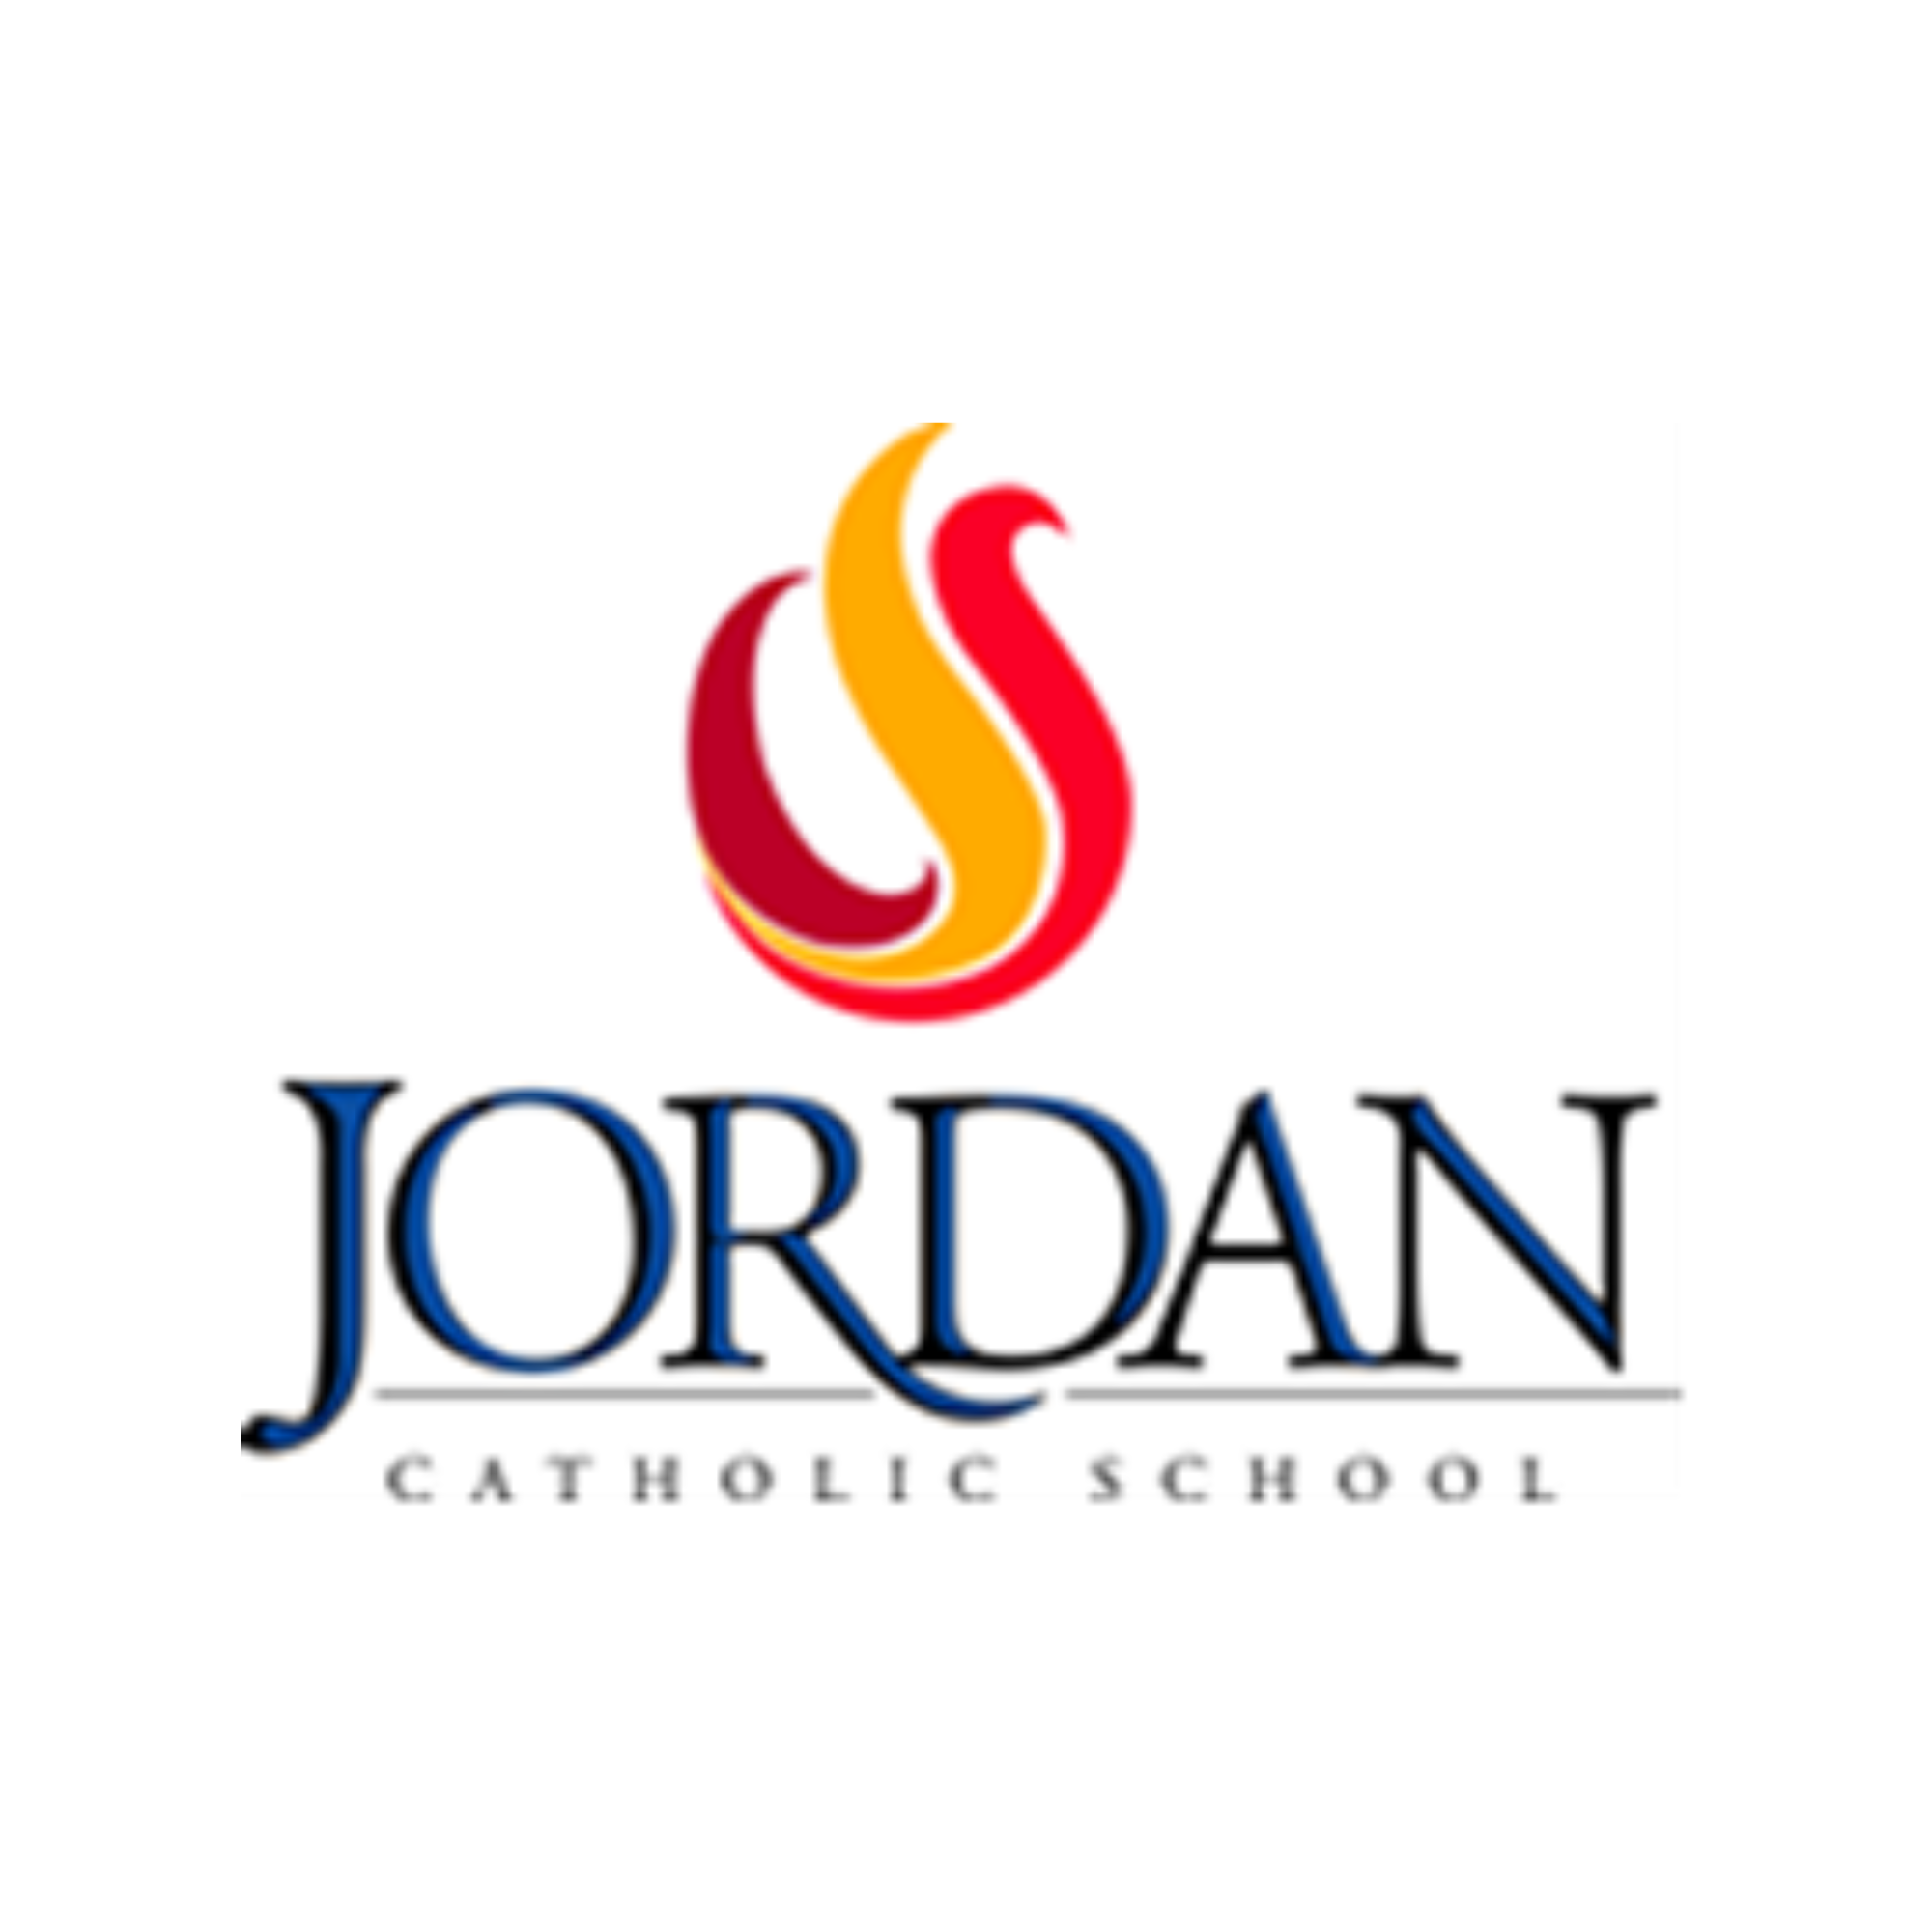 Jordan Catholic School